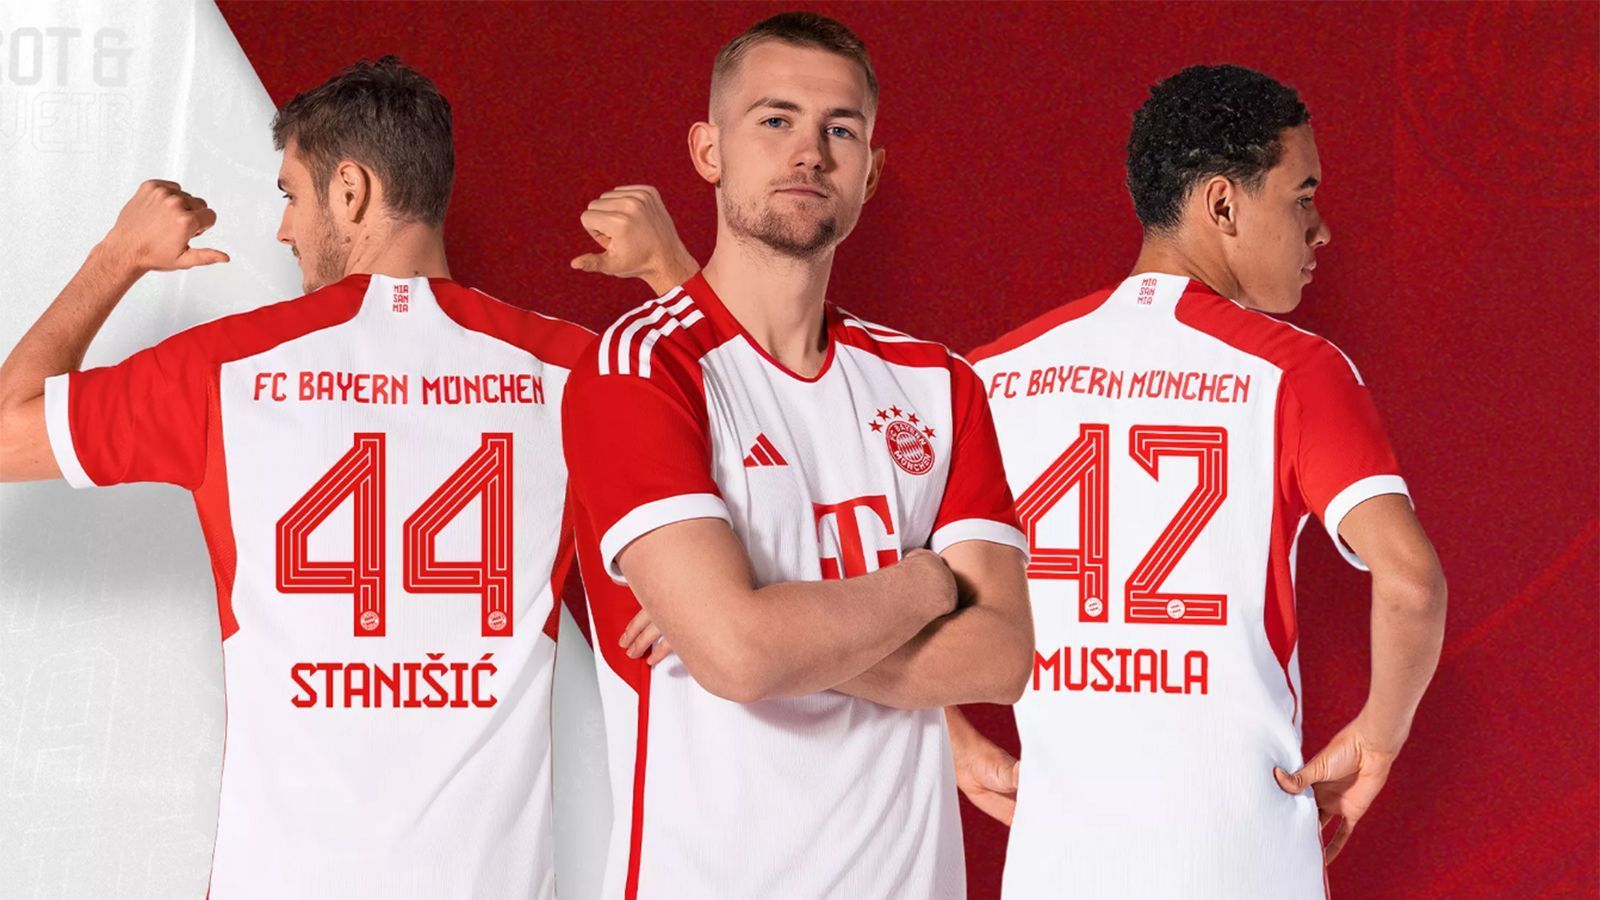 <strong>FC Bayern München</strong><br>
                Das Trikot des Rekordmeisters kombiniert die traditionellen Farben des Vereins, aber in einem anderen Stil als sonst.&nbsp;Zum ersten Mal seit Jahrzehnten ist die Grundfarbe des Bayern-Trikots nicht rot, sondern weiß. Rot sind jetzt die Ärmel. Die Logos und der Kragen sind rot, während die Adidas-Streifen in weiß gehalten sind.
